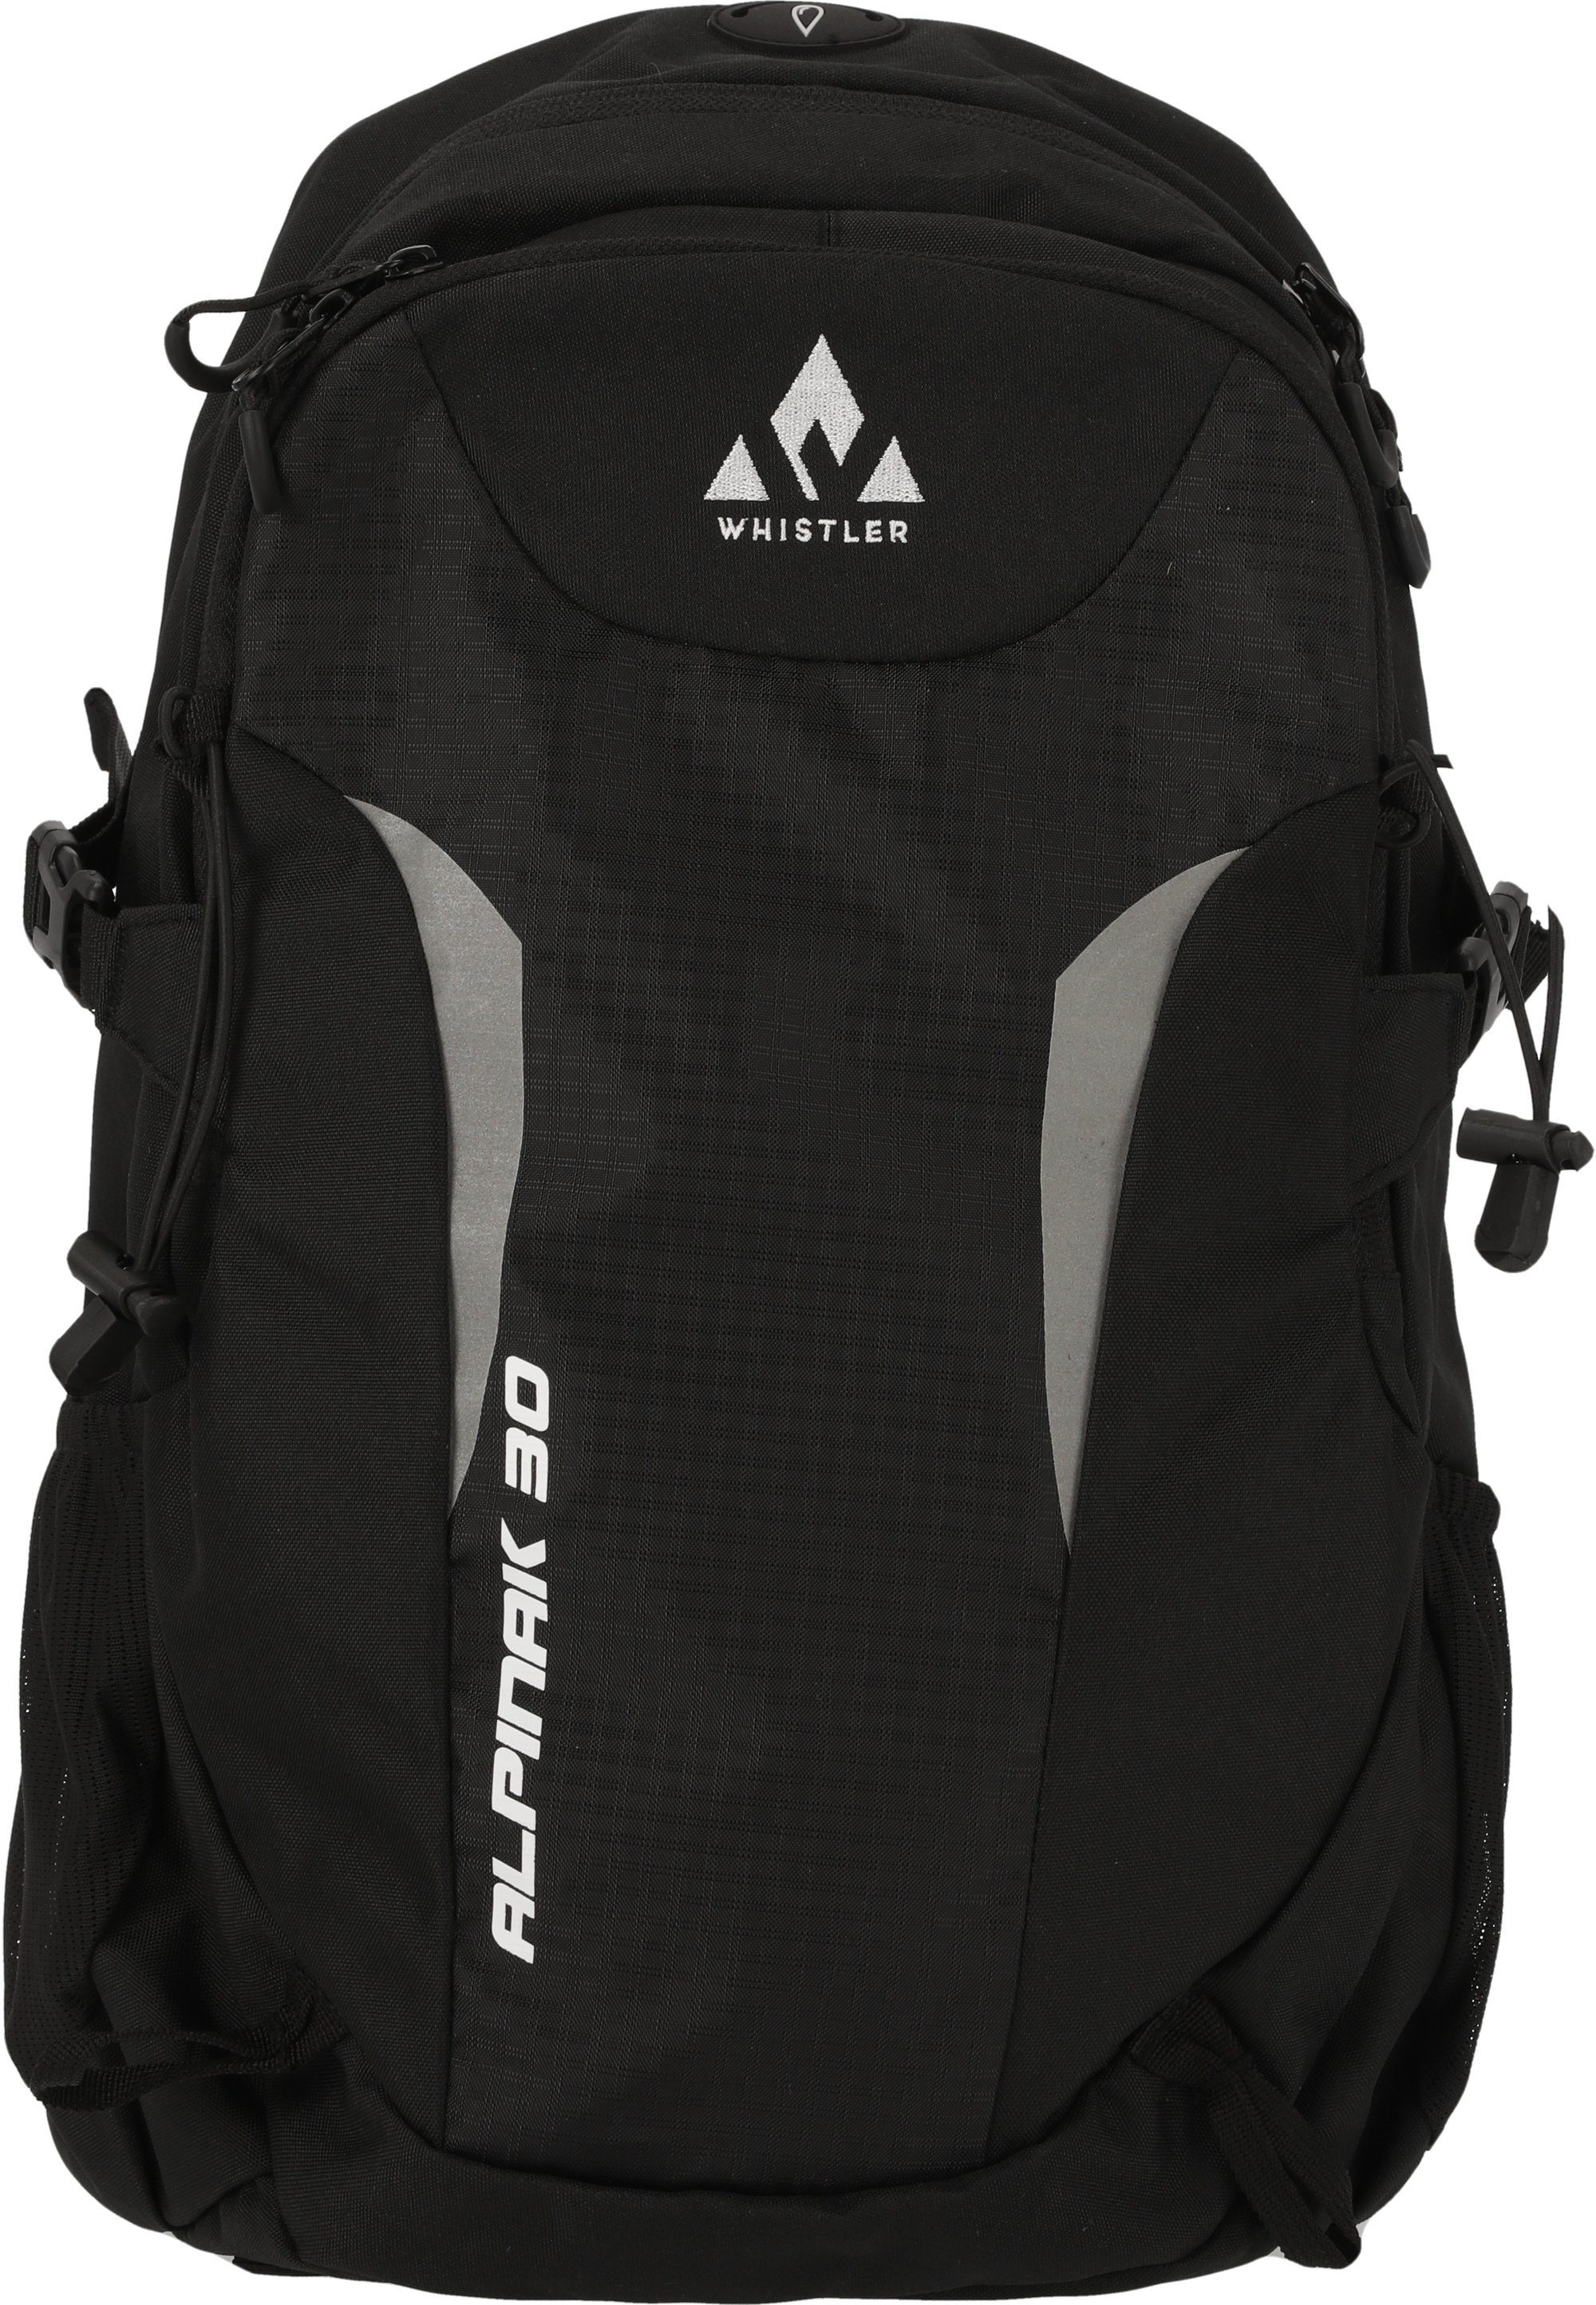 WHISTLER Sportrucksack Alpinak, mit vielseitigen Taschen schwarz | Daypacks